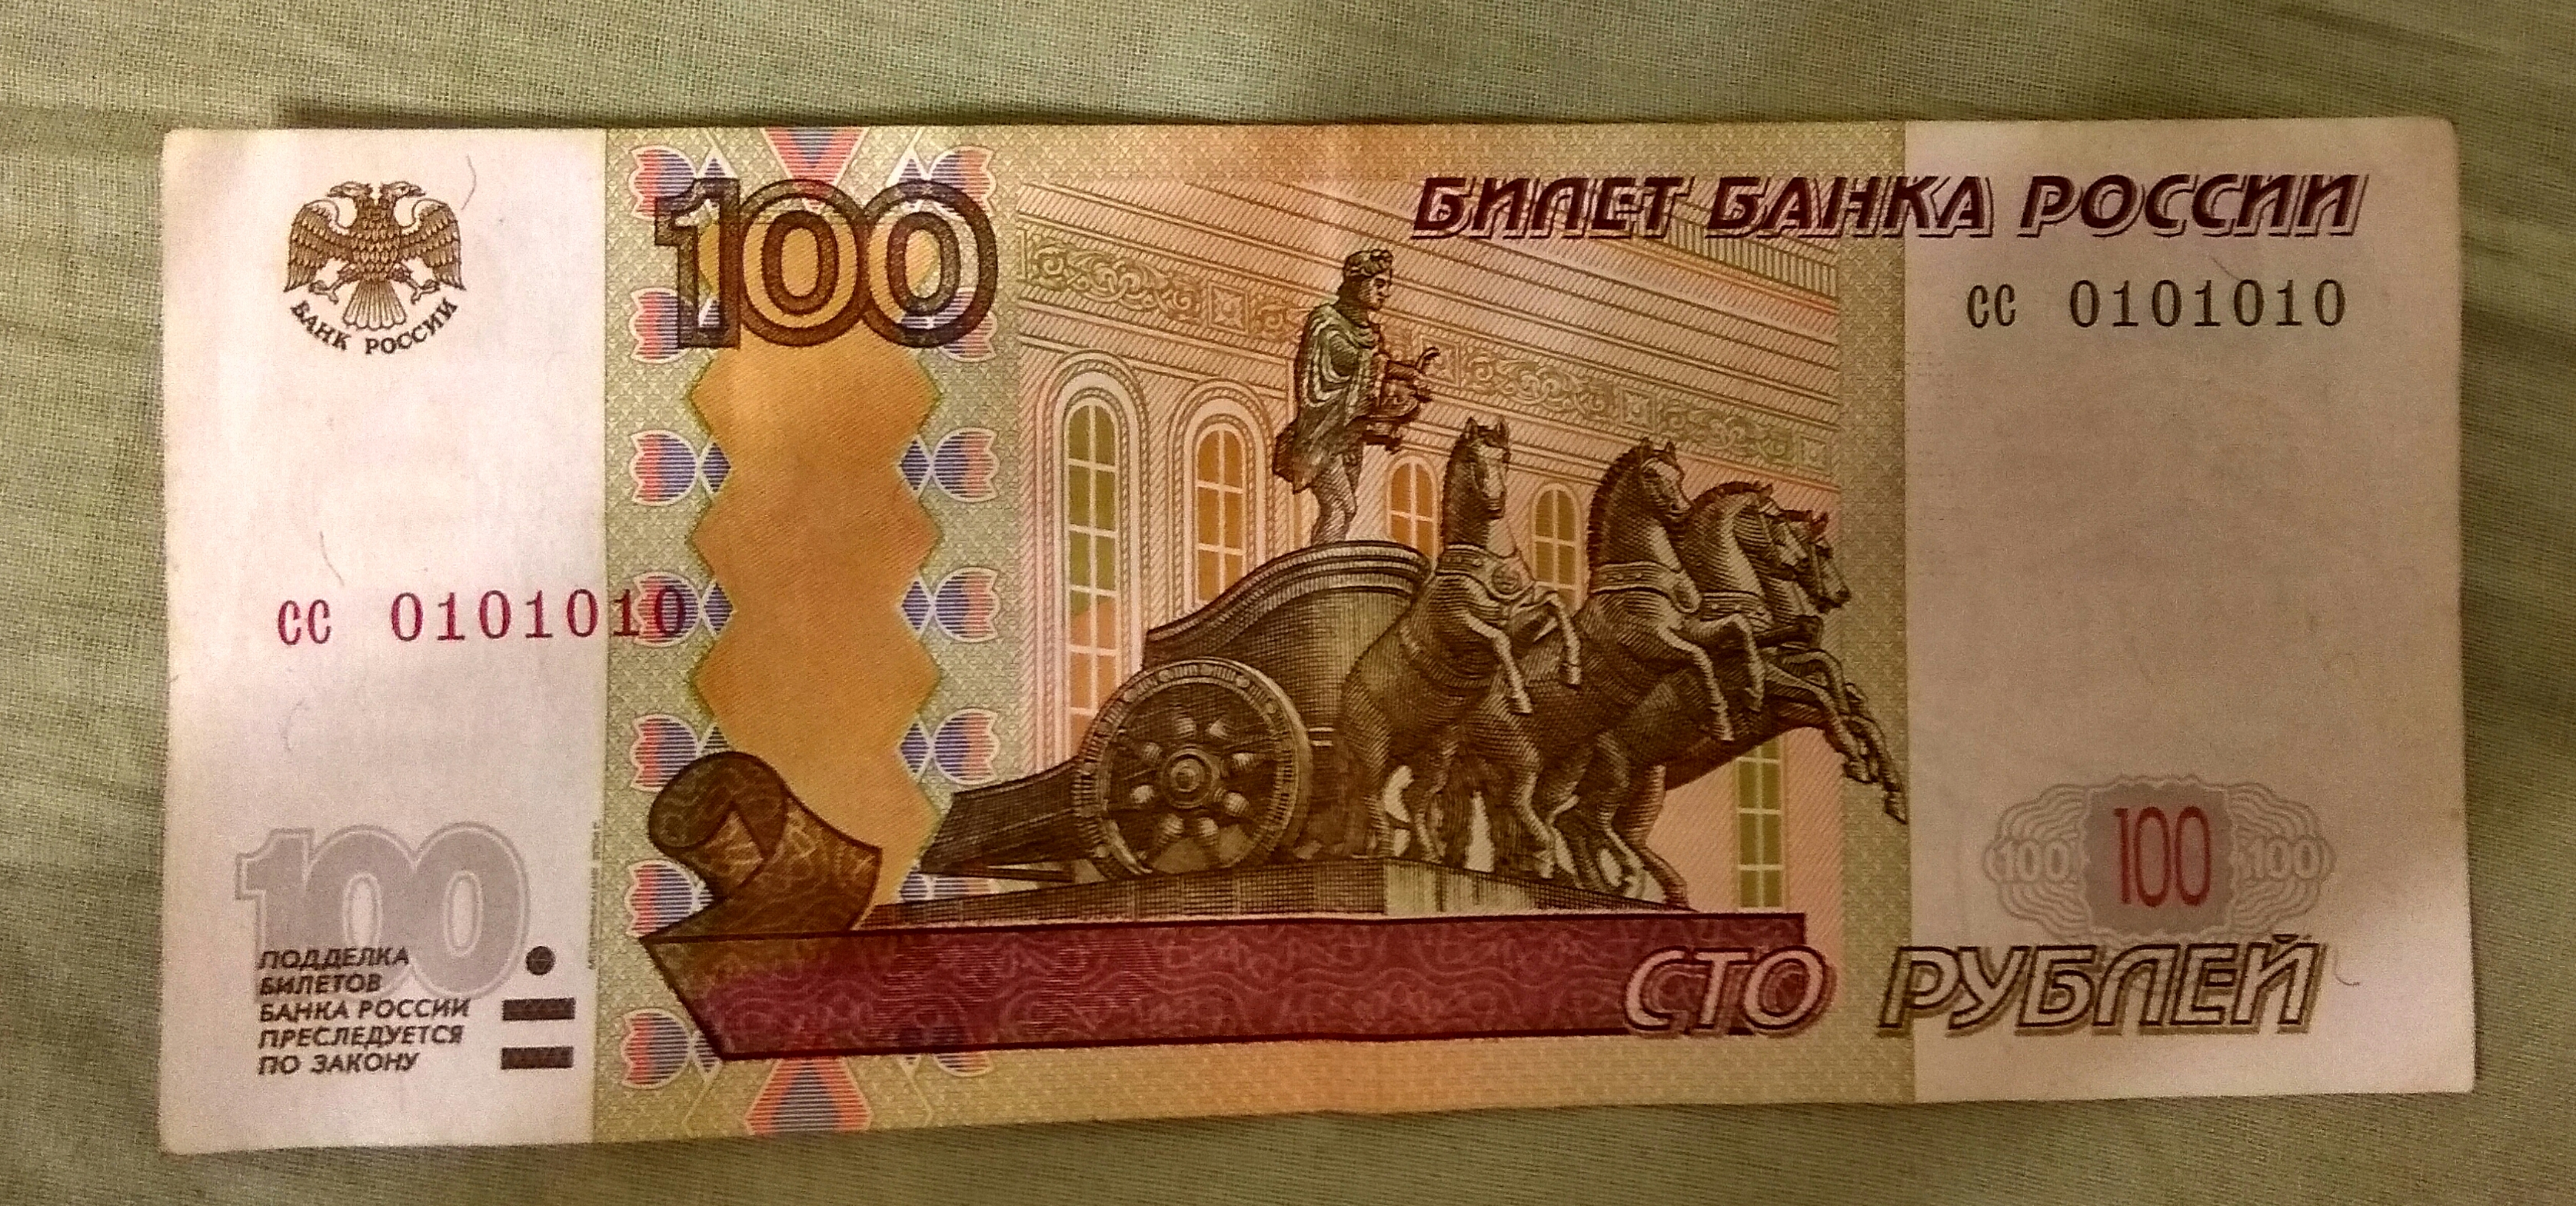 100 Рублей от Бонд